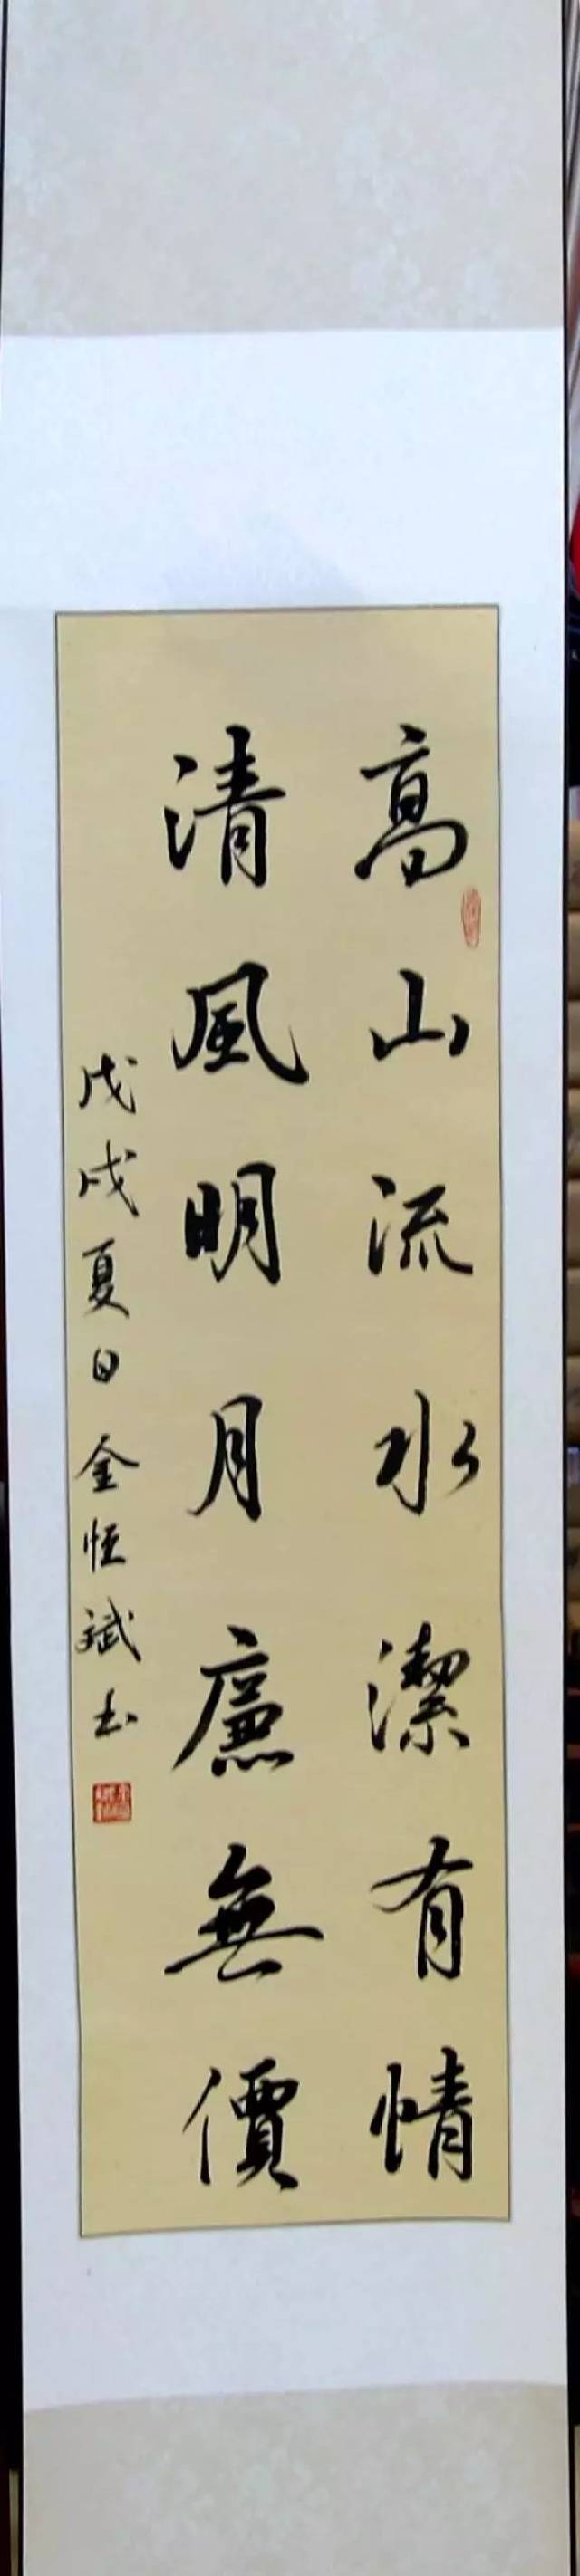 【廉政文化】突泉县"清风杯"廉政书法大赛获奖作品展